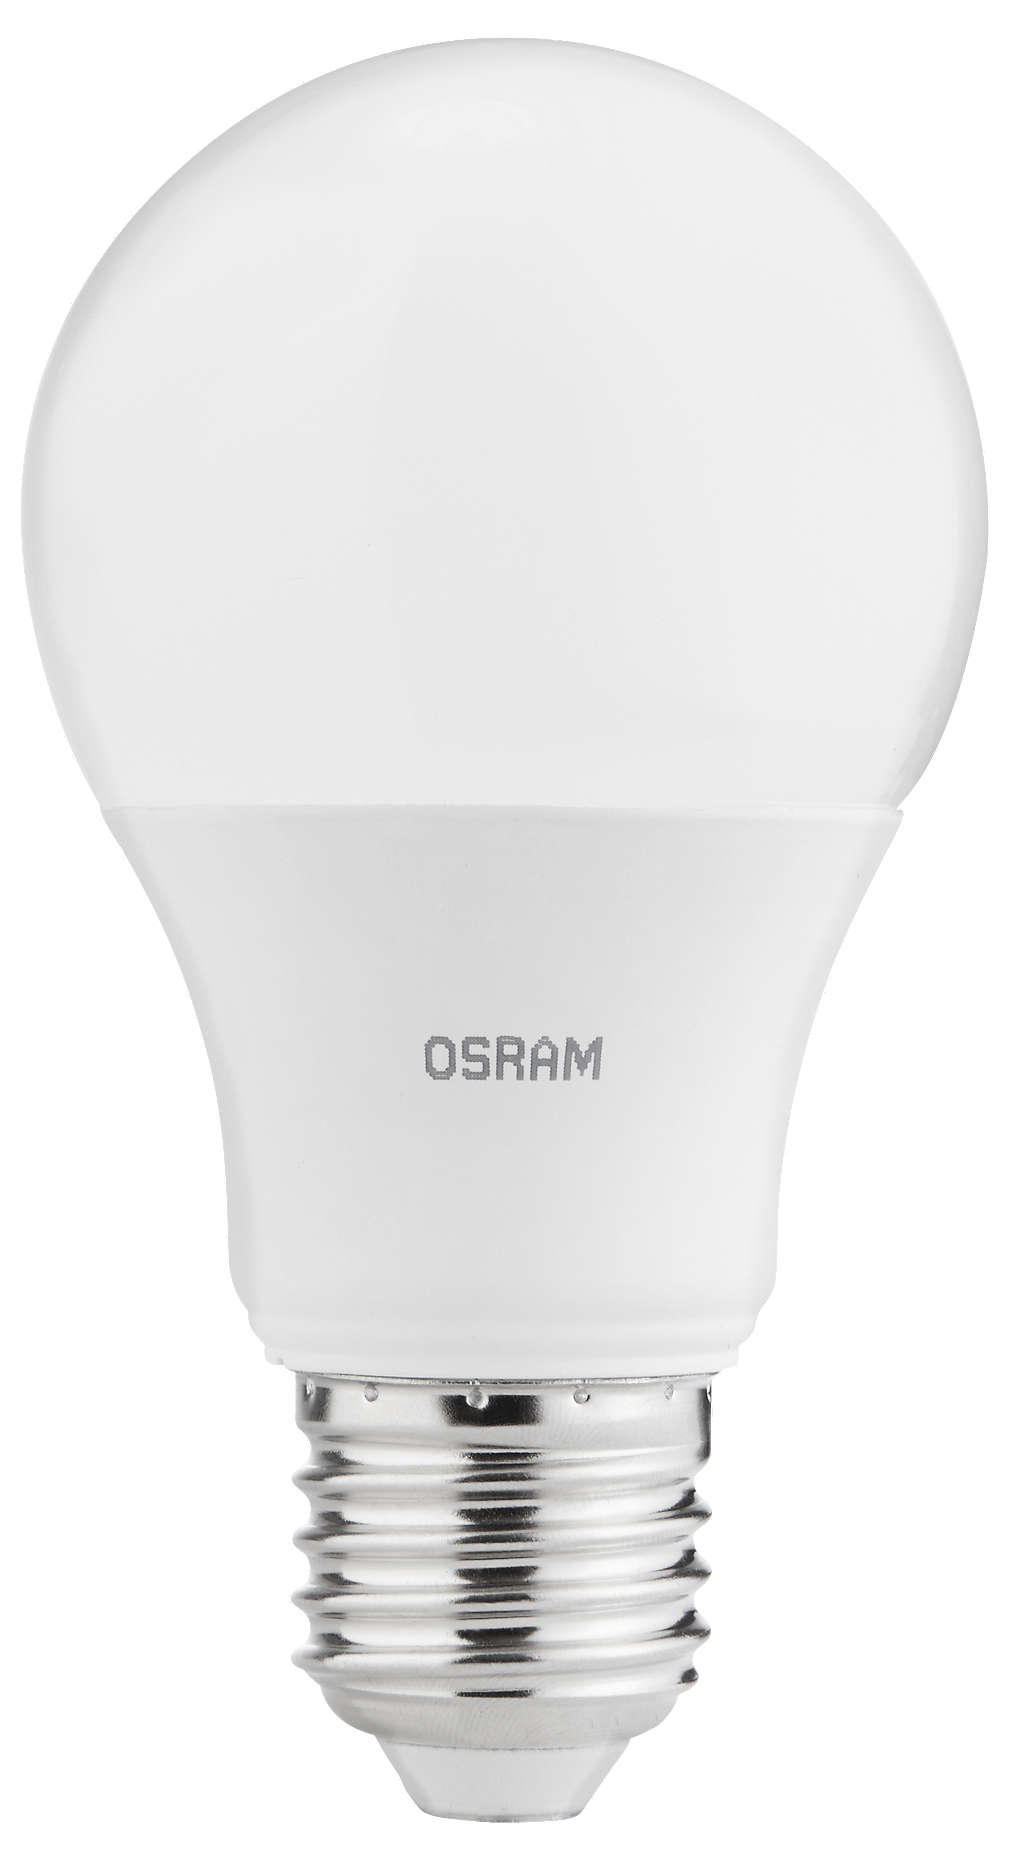 Fotografija ponude Osram LED žarulja A60 8,5W